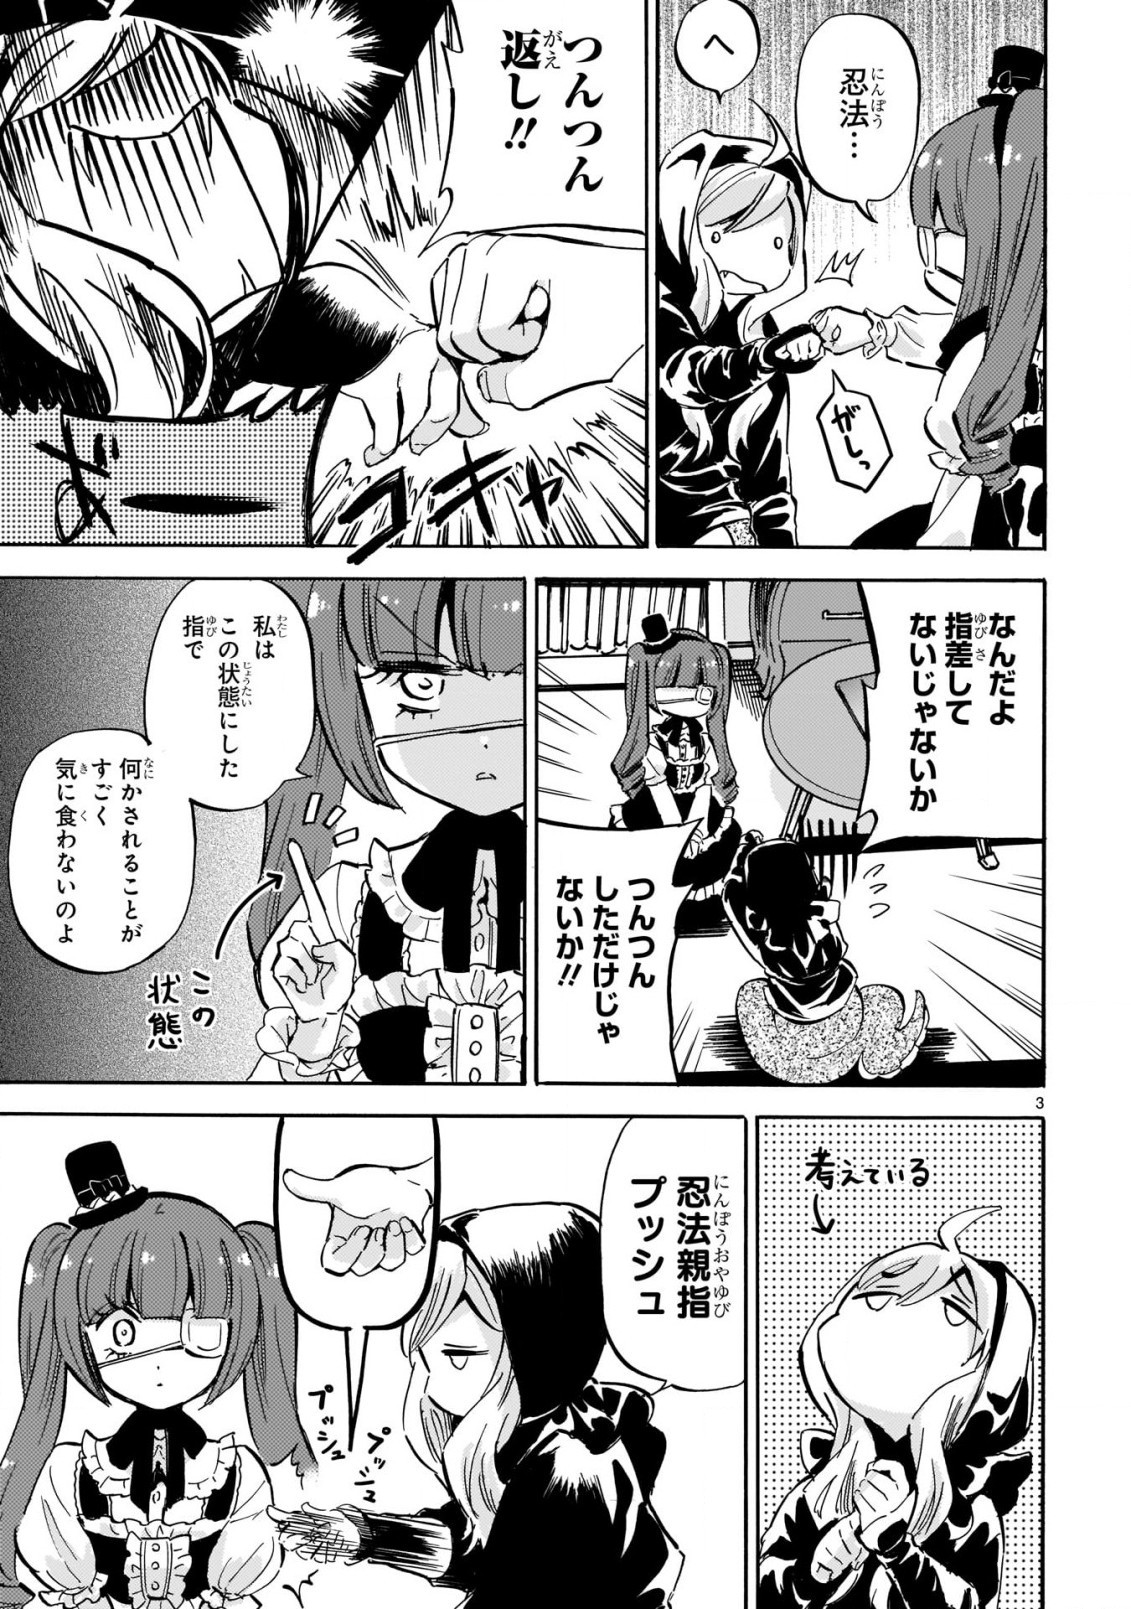 Jashin-chan Dropkick - Chapter 202 - Page 3